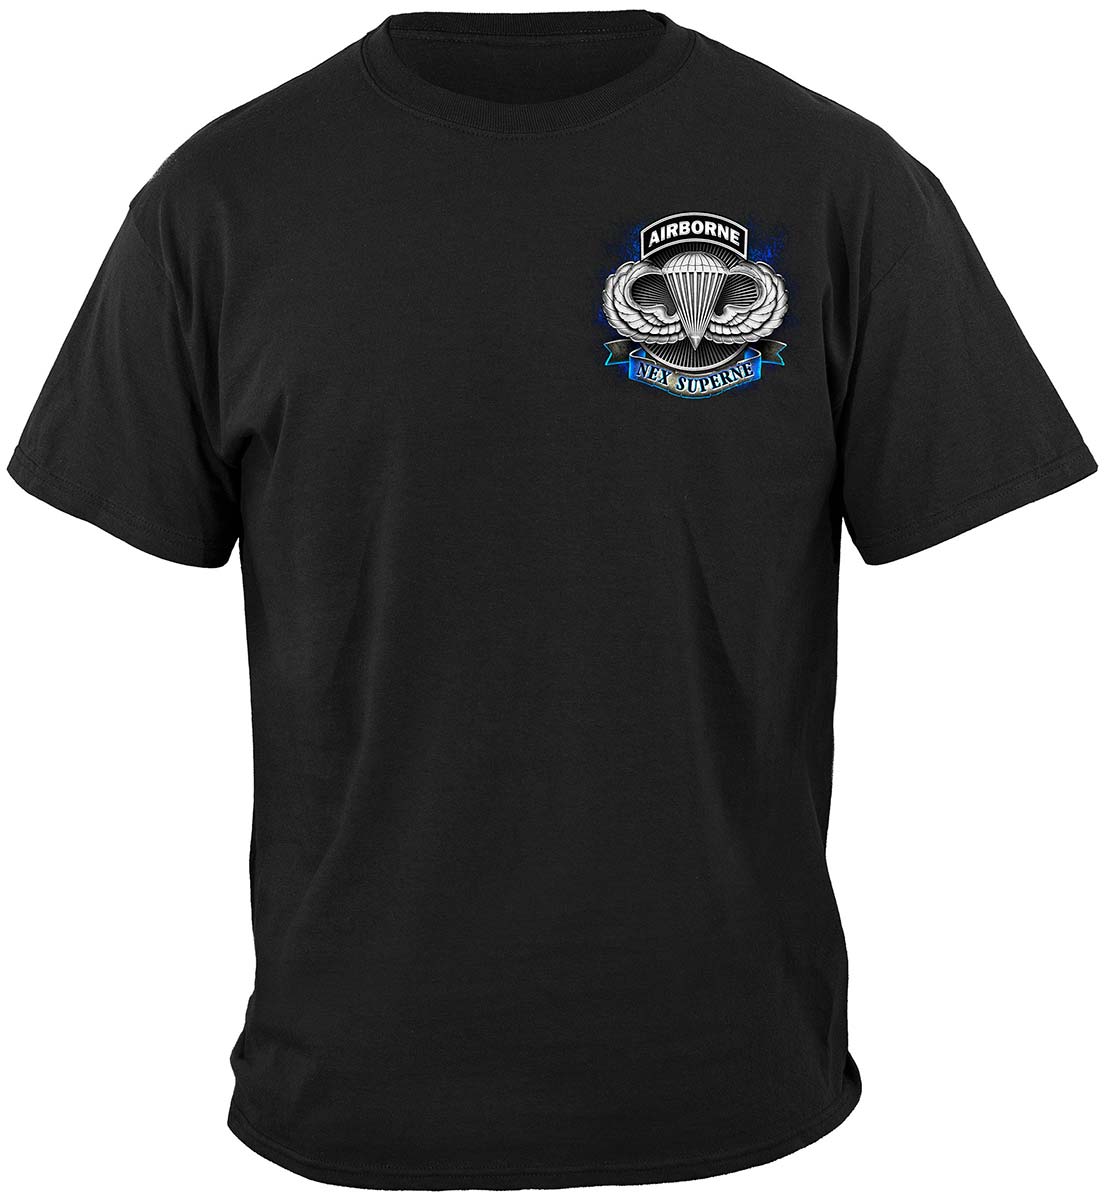 True Heroes Air Borne Premium T-Shirt